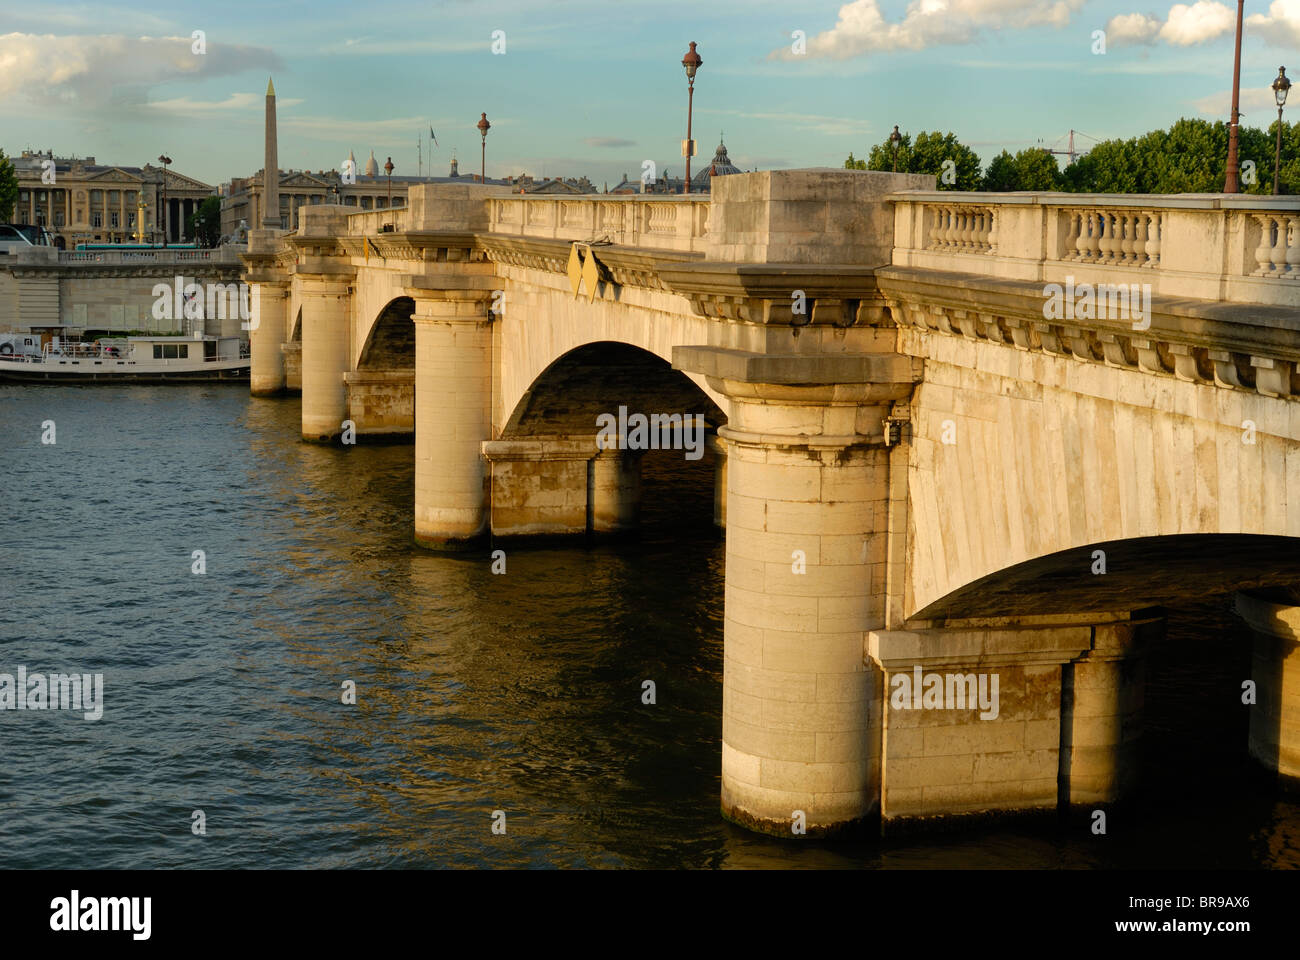 Pont De La Concorde over the Seine River, Paris France. Stock Photo